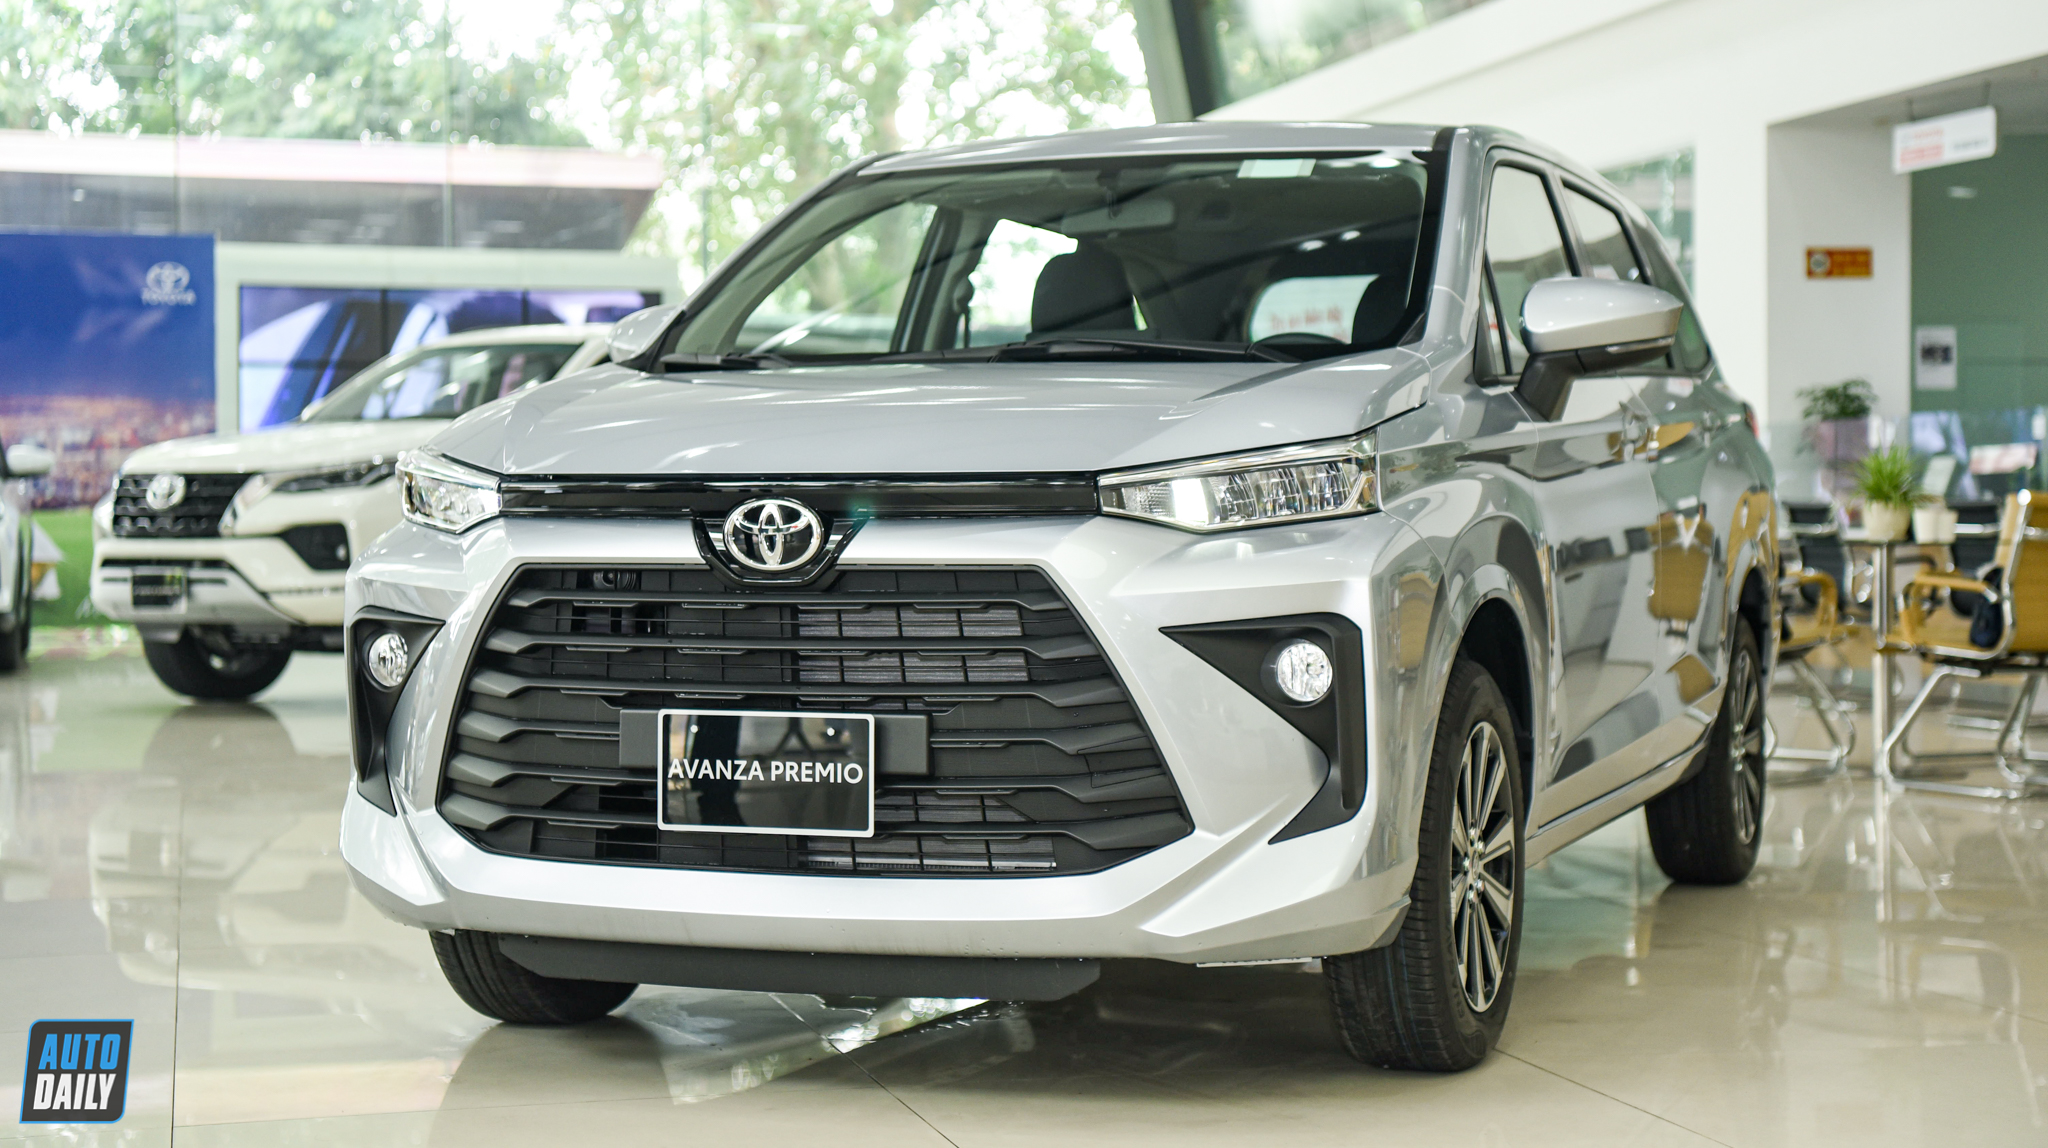 Toyota Việt Nam triệu hồi các dòng xe Veloz, Avanza, Yaris Cross Toyota Việt Nam tạm dừng giao xe Avanza Premio MT Cận cảnh Toyota Avanza Premio 2022 giá 588 triệu tại đại lý adt-4927.jpg